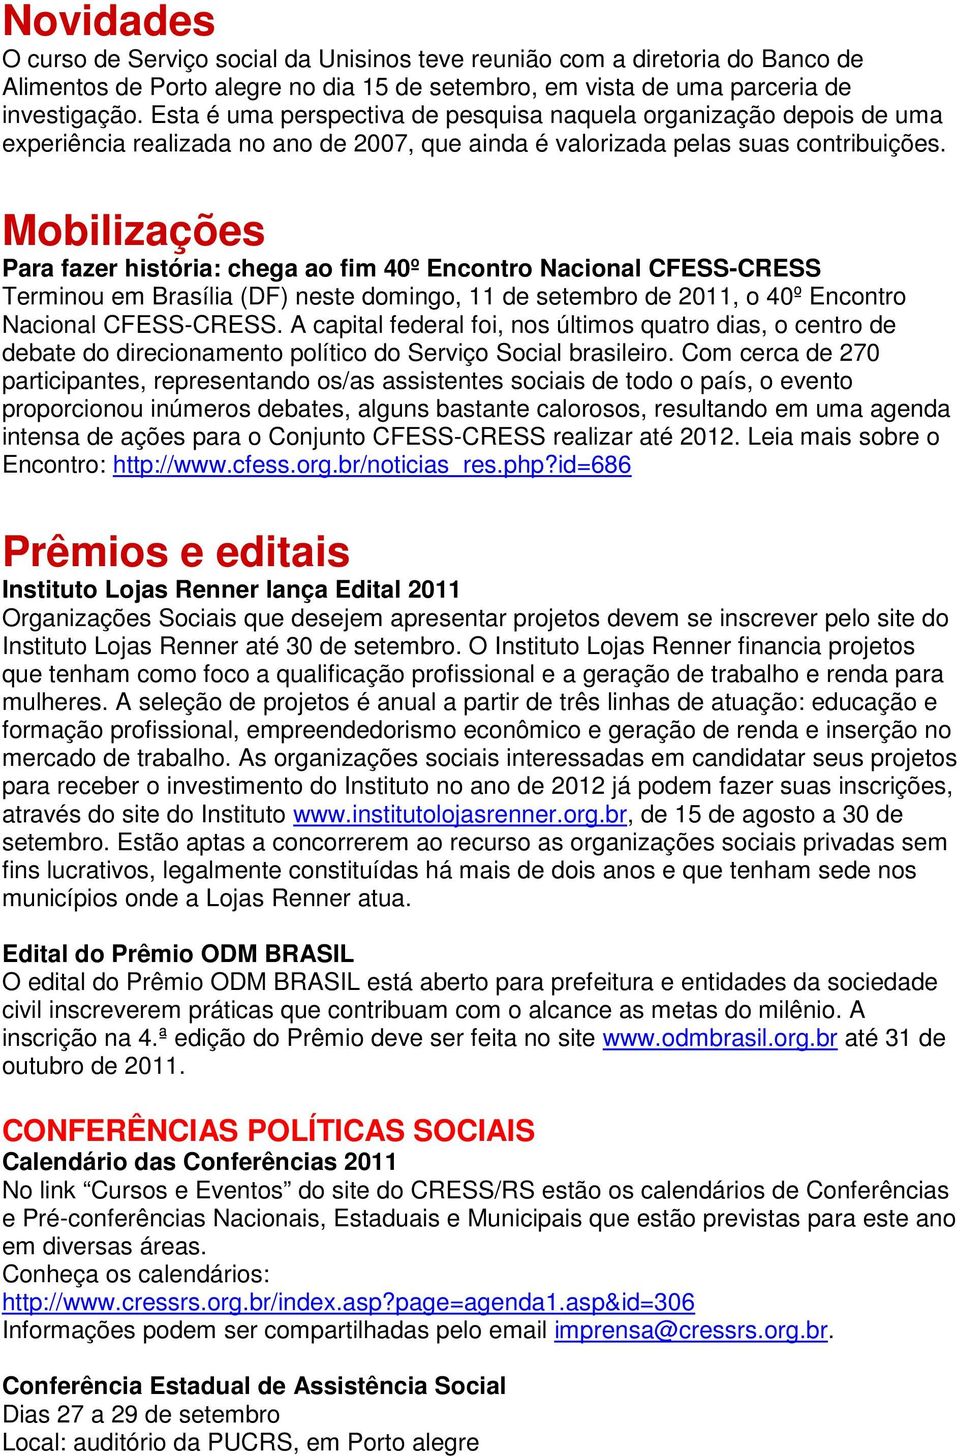 Mobilizações Para fazer história: chega ao fim 40º Encontro Nacional CFESS-CRESS Terminou em Brasília (DF) neste domingo, 11 de setembro de 2011, o 40º Encontro Nacional CFESS-CRESS.